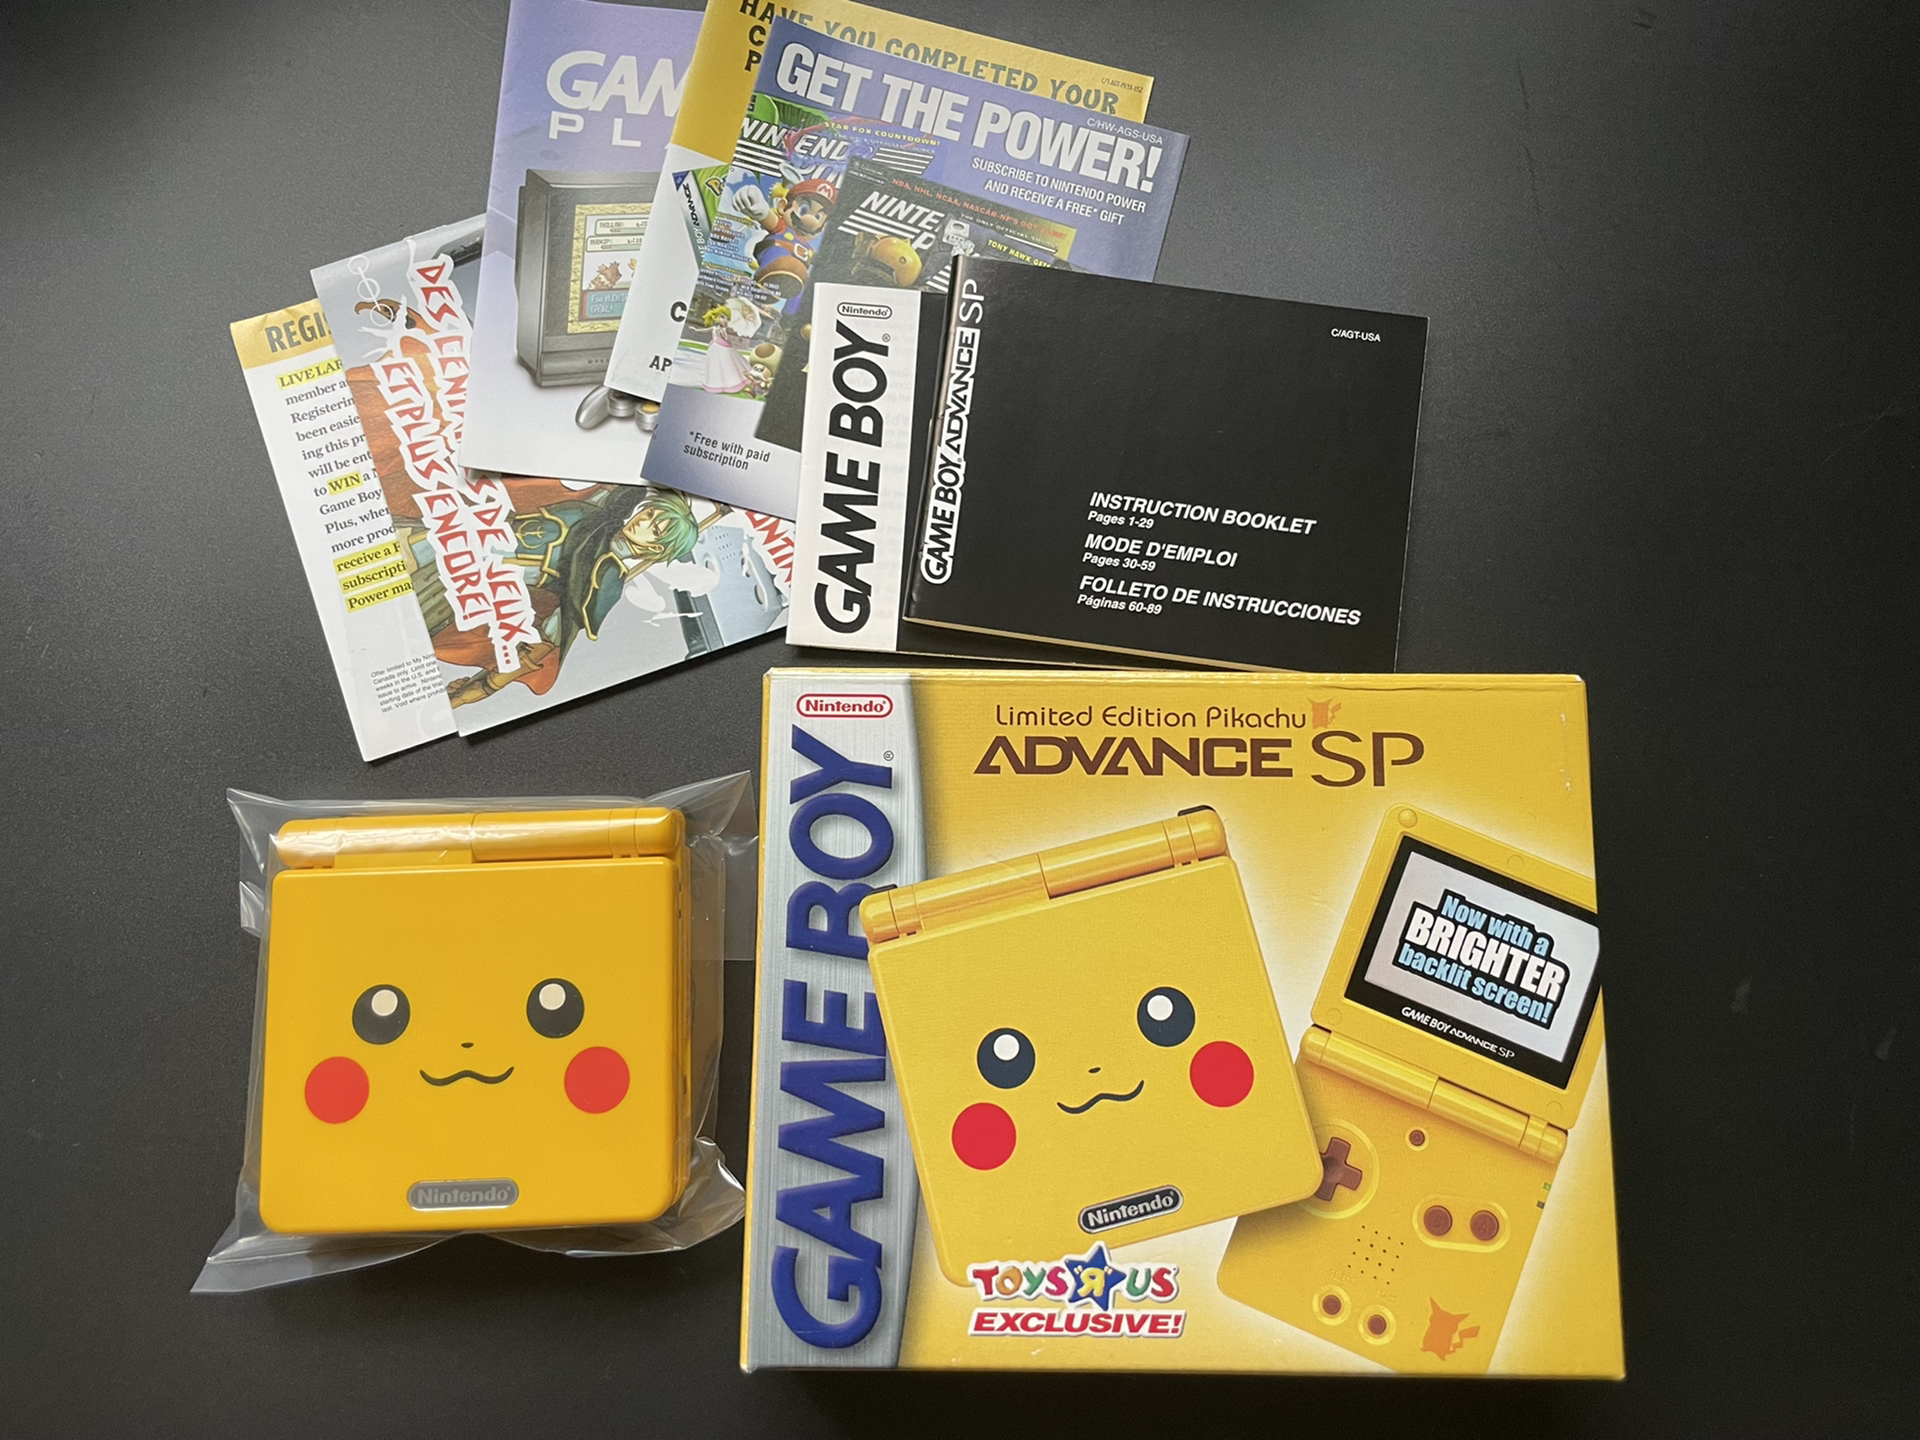 Game Boy Advance SP Pikachu упаковка